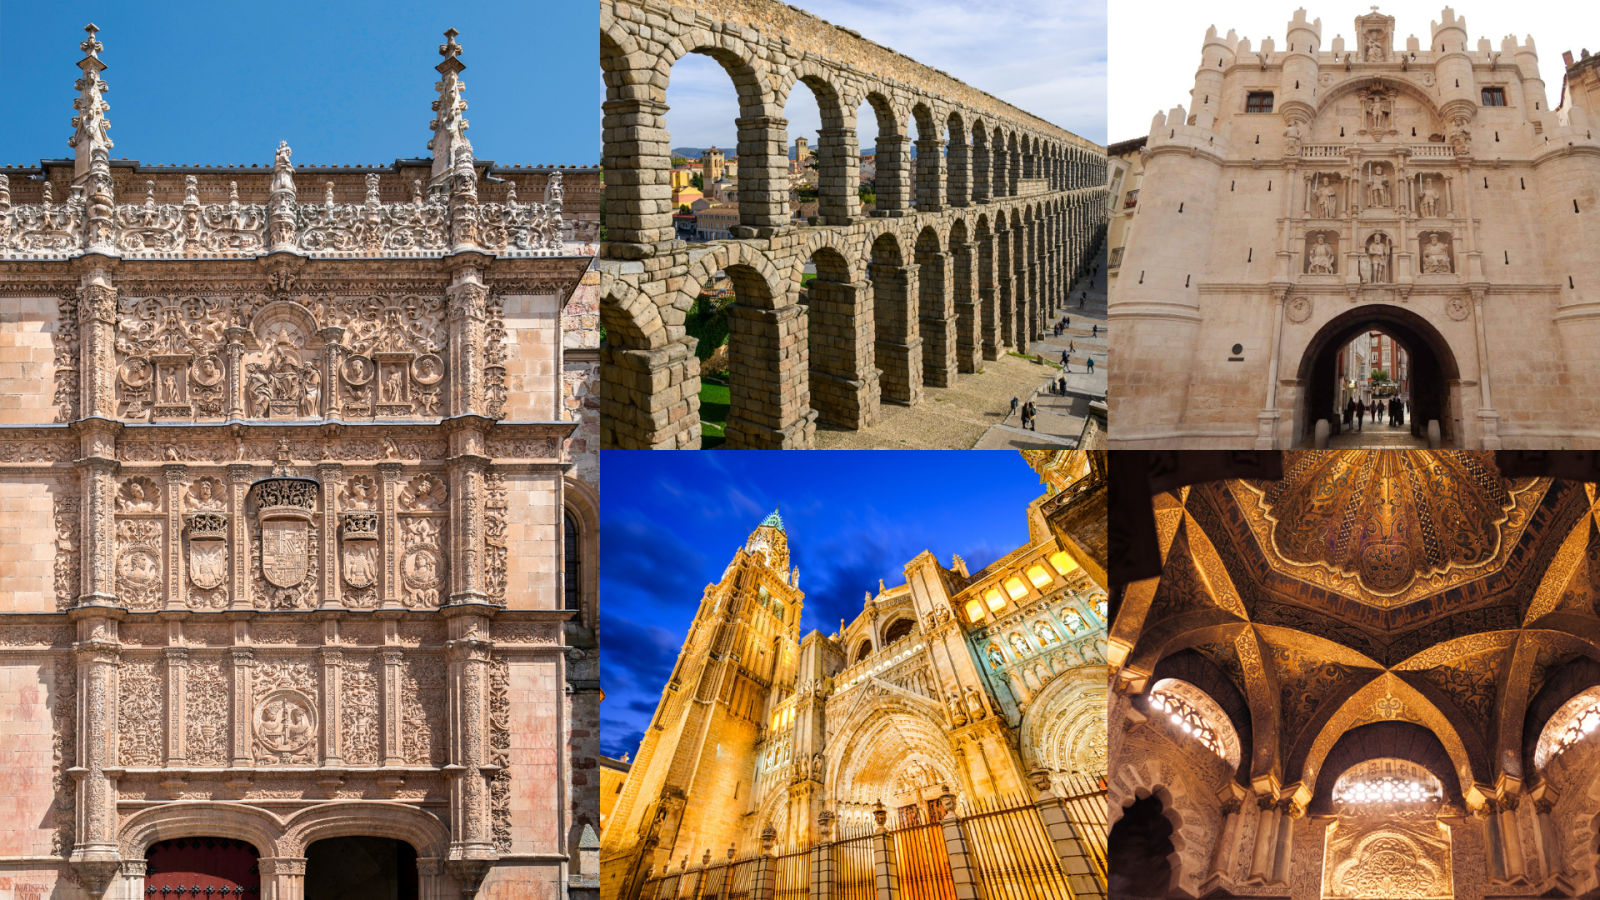 5 เมืองน่าเที่ยวในสเปน ที่ถูกยกย่องให้เป็นเมืองมรดกโลกจาก UNESCO มีที่ไหนบ้าง ?